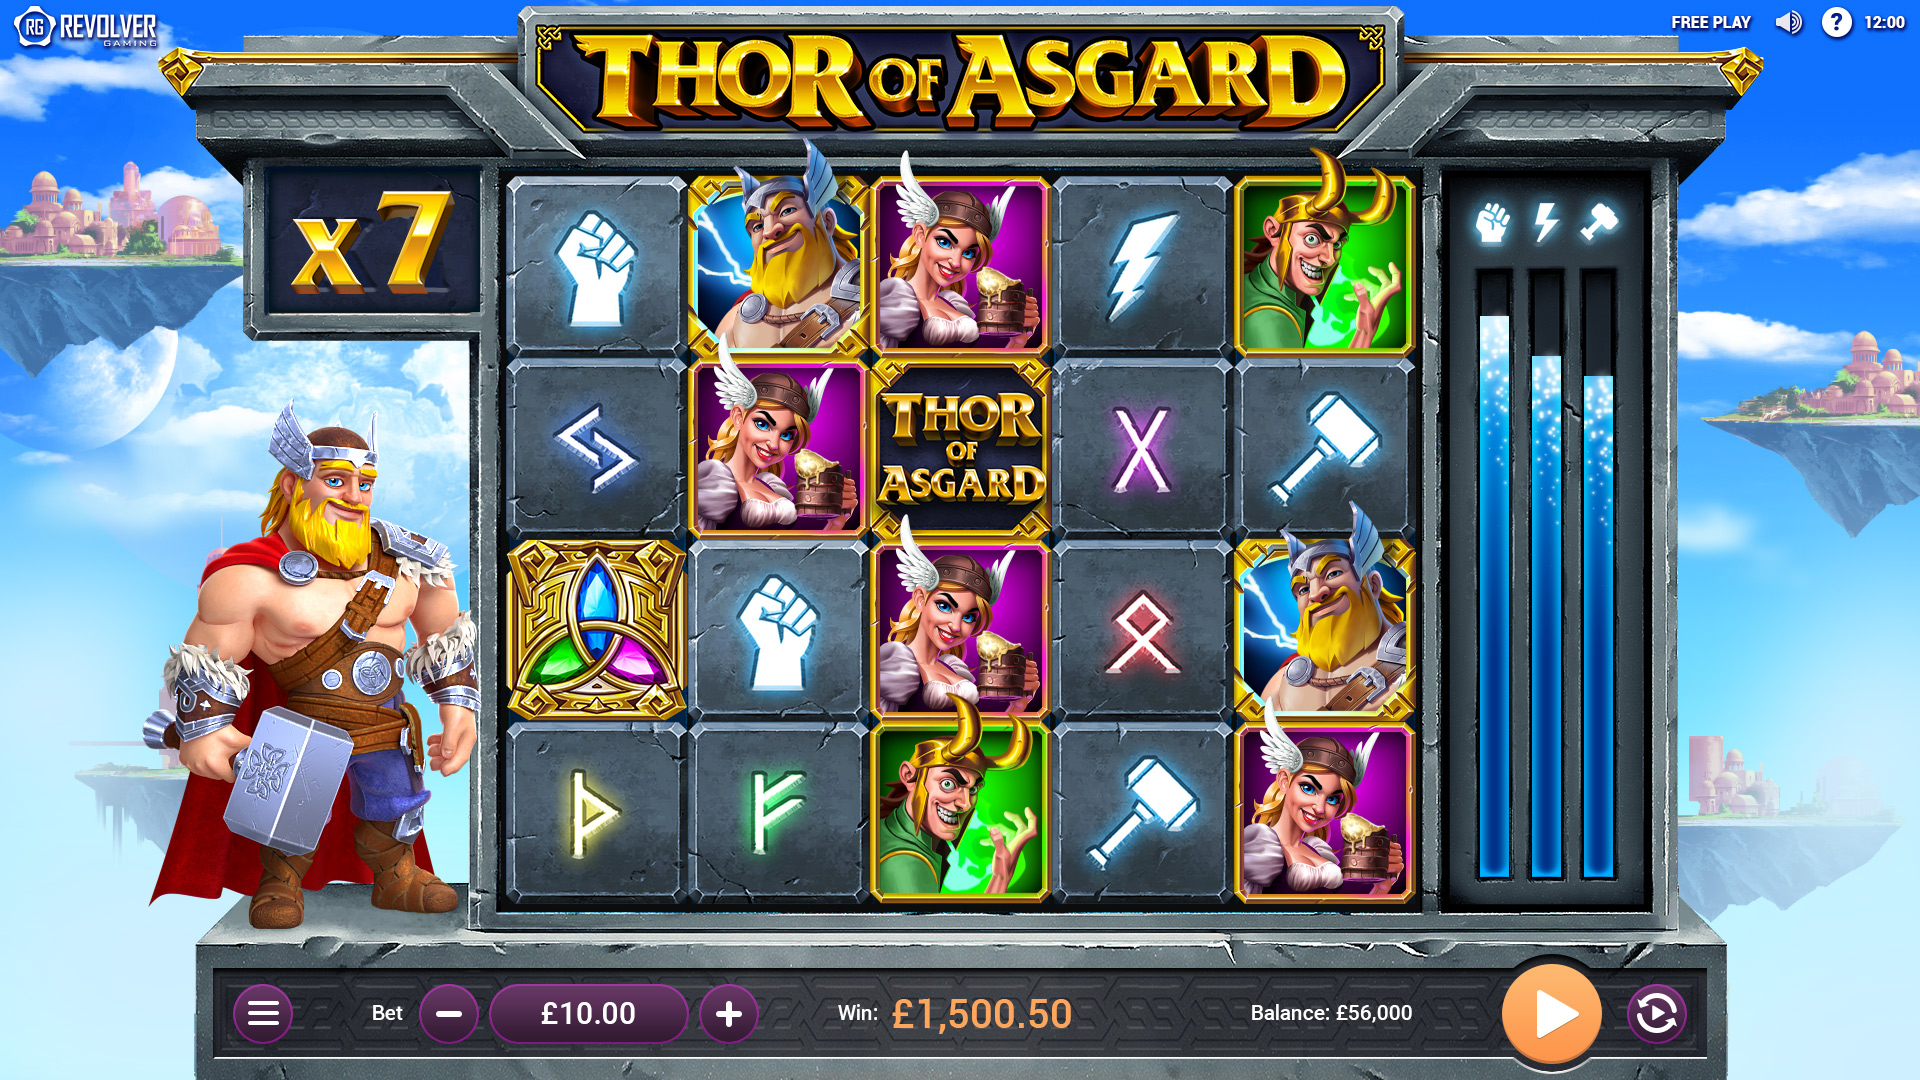 Thor of Asgard - Revolver Gaming